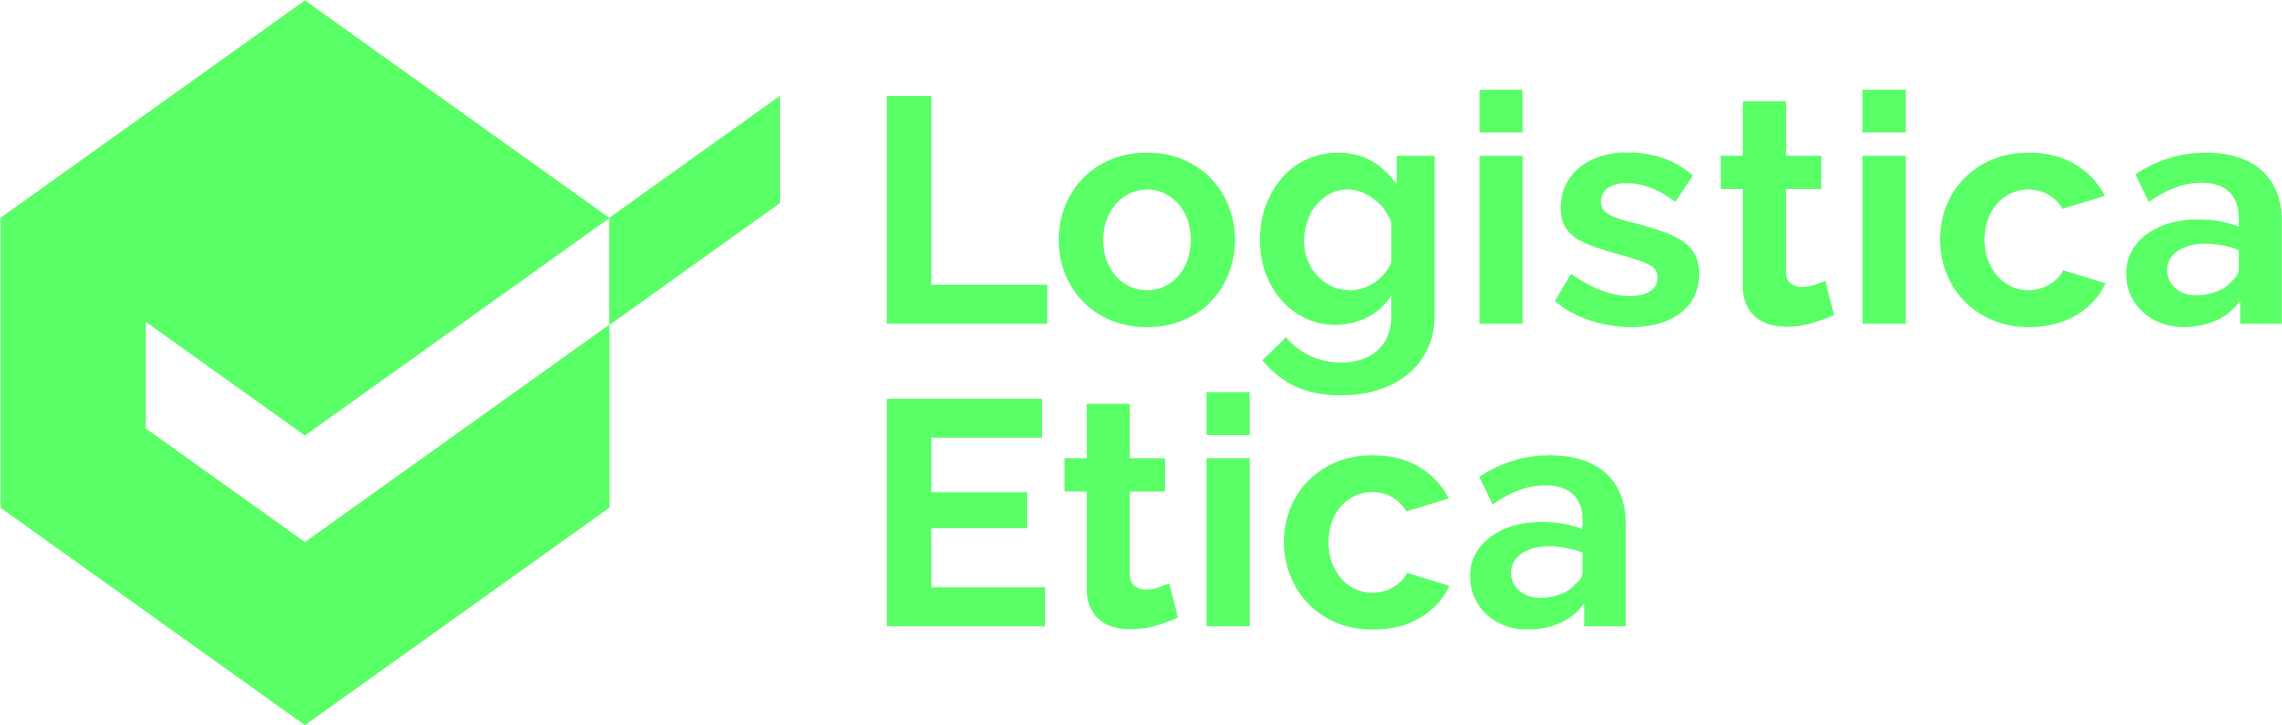 Logo Carta metropolitana per la logistica etica